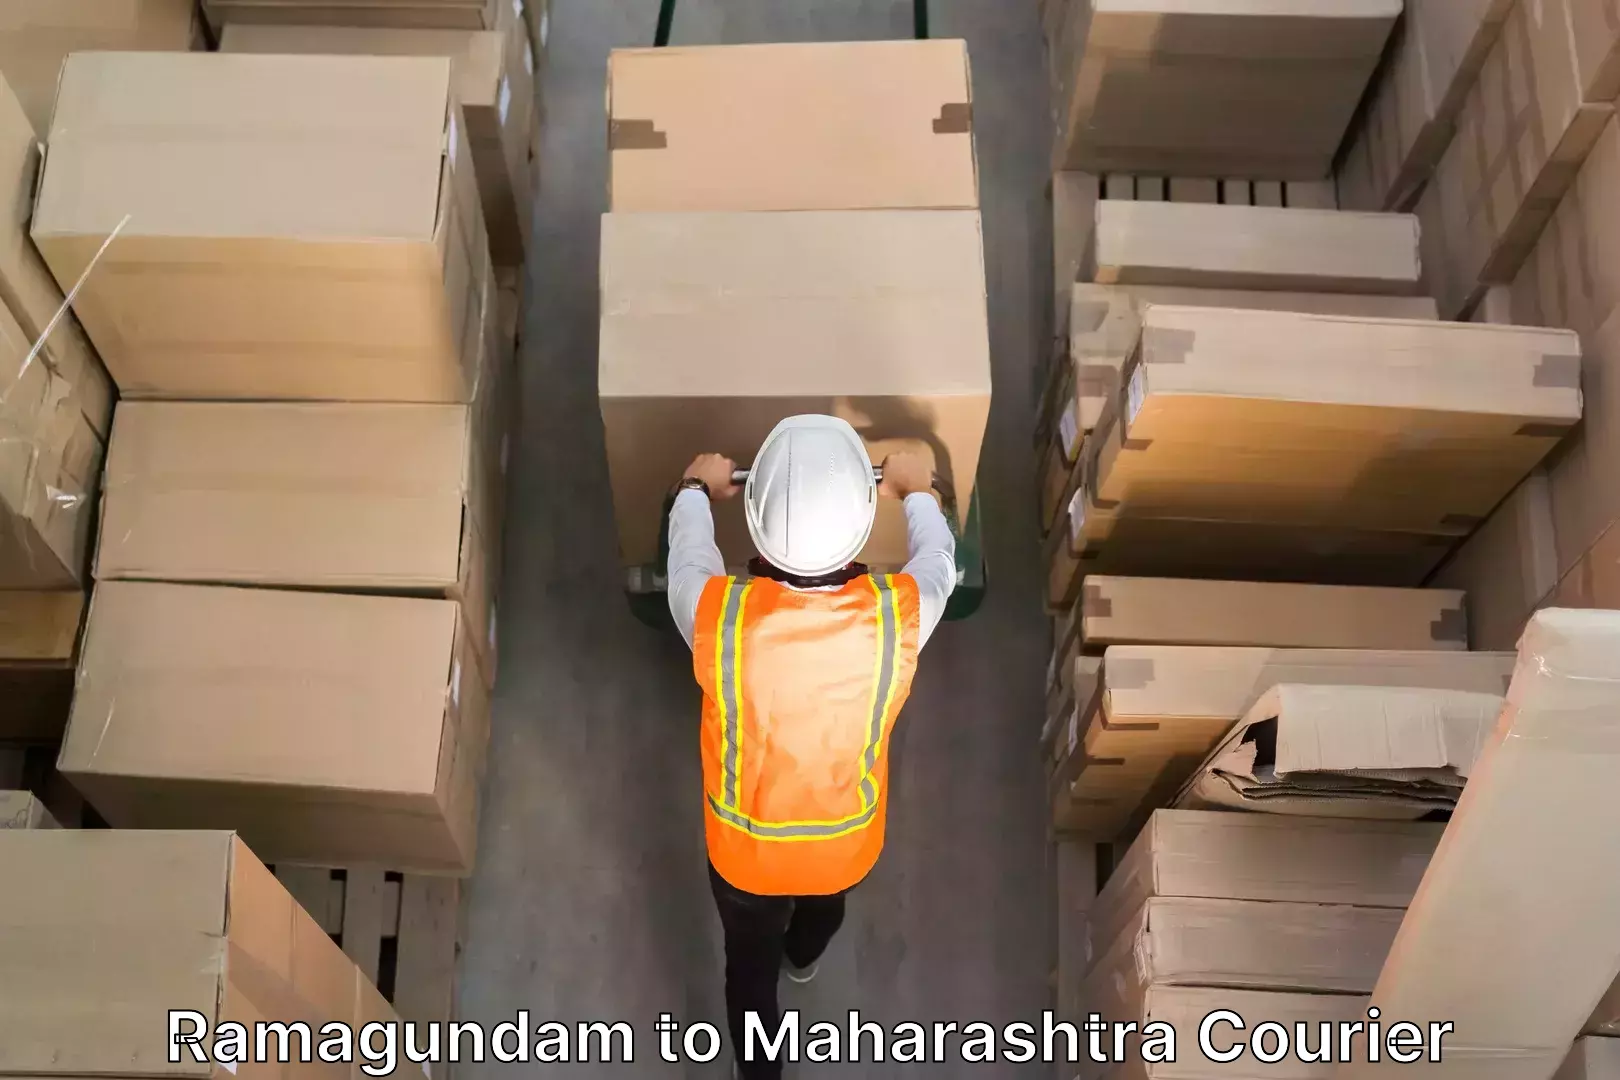 Trusted relocation experts Ramagundam to Maharashtra